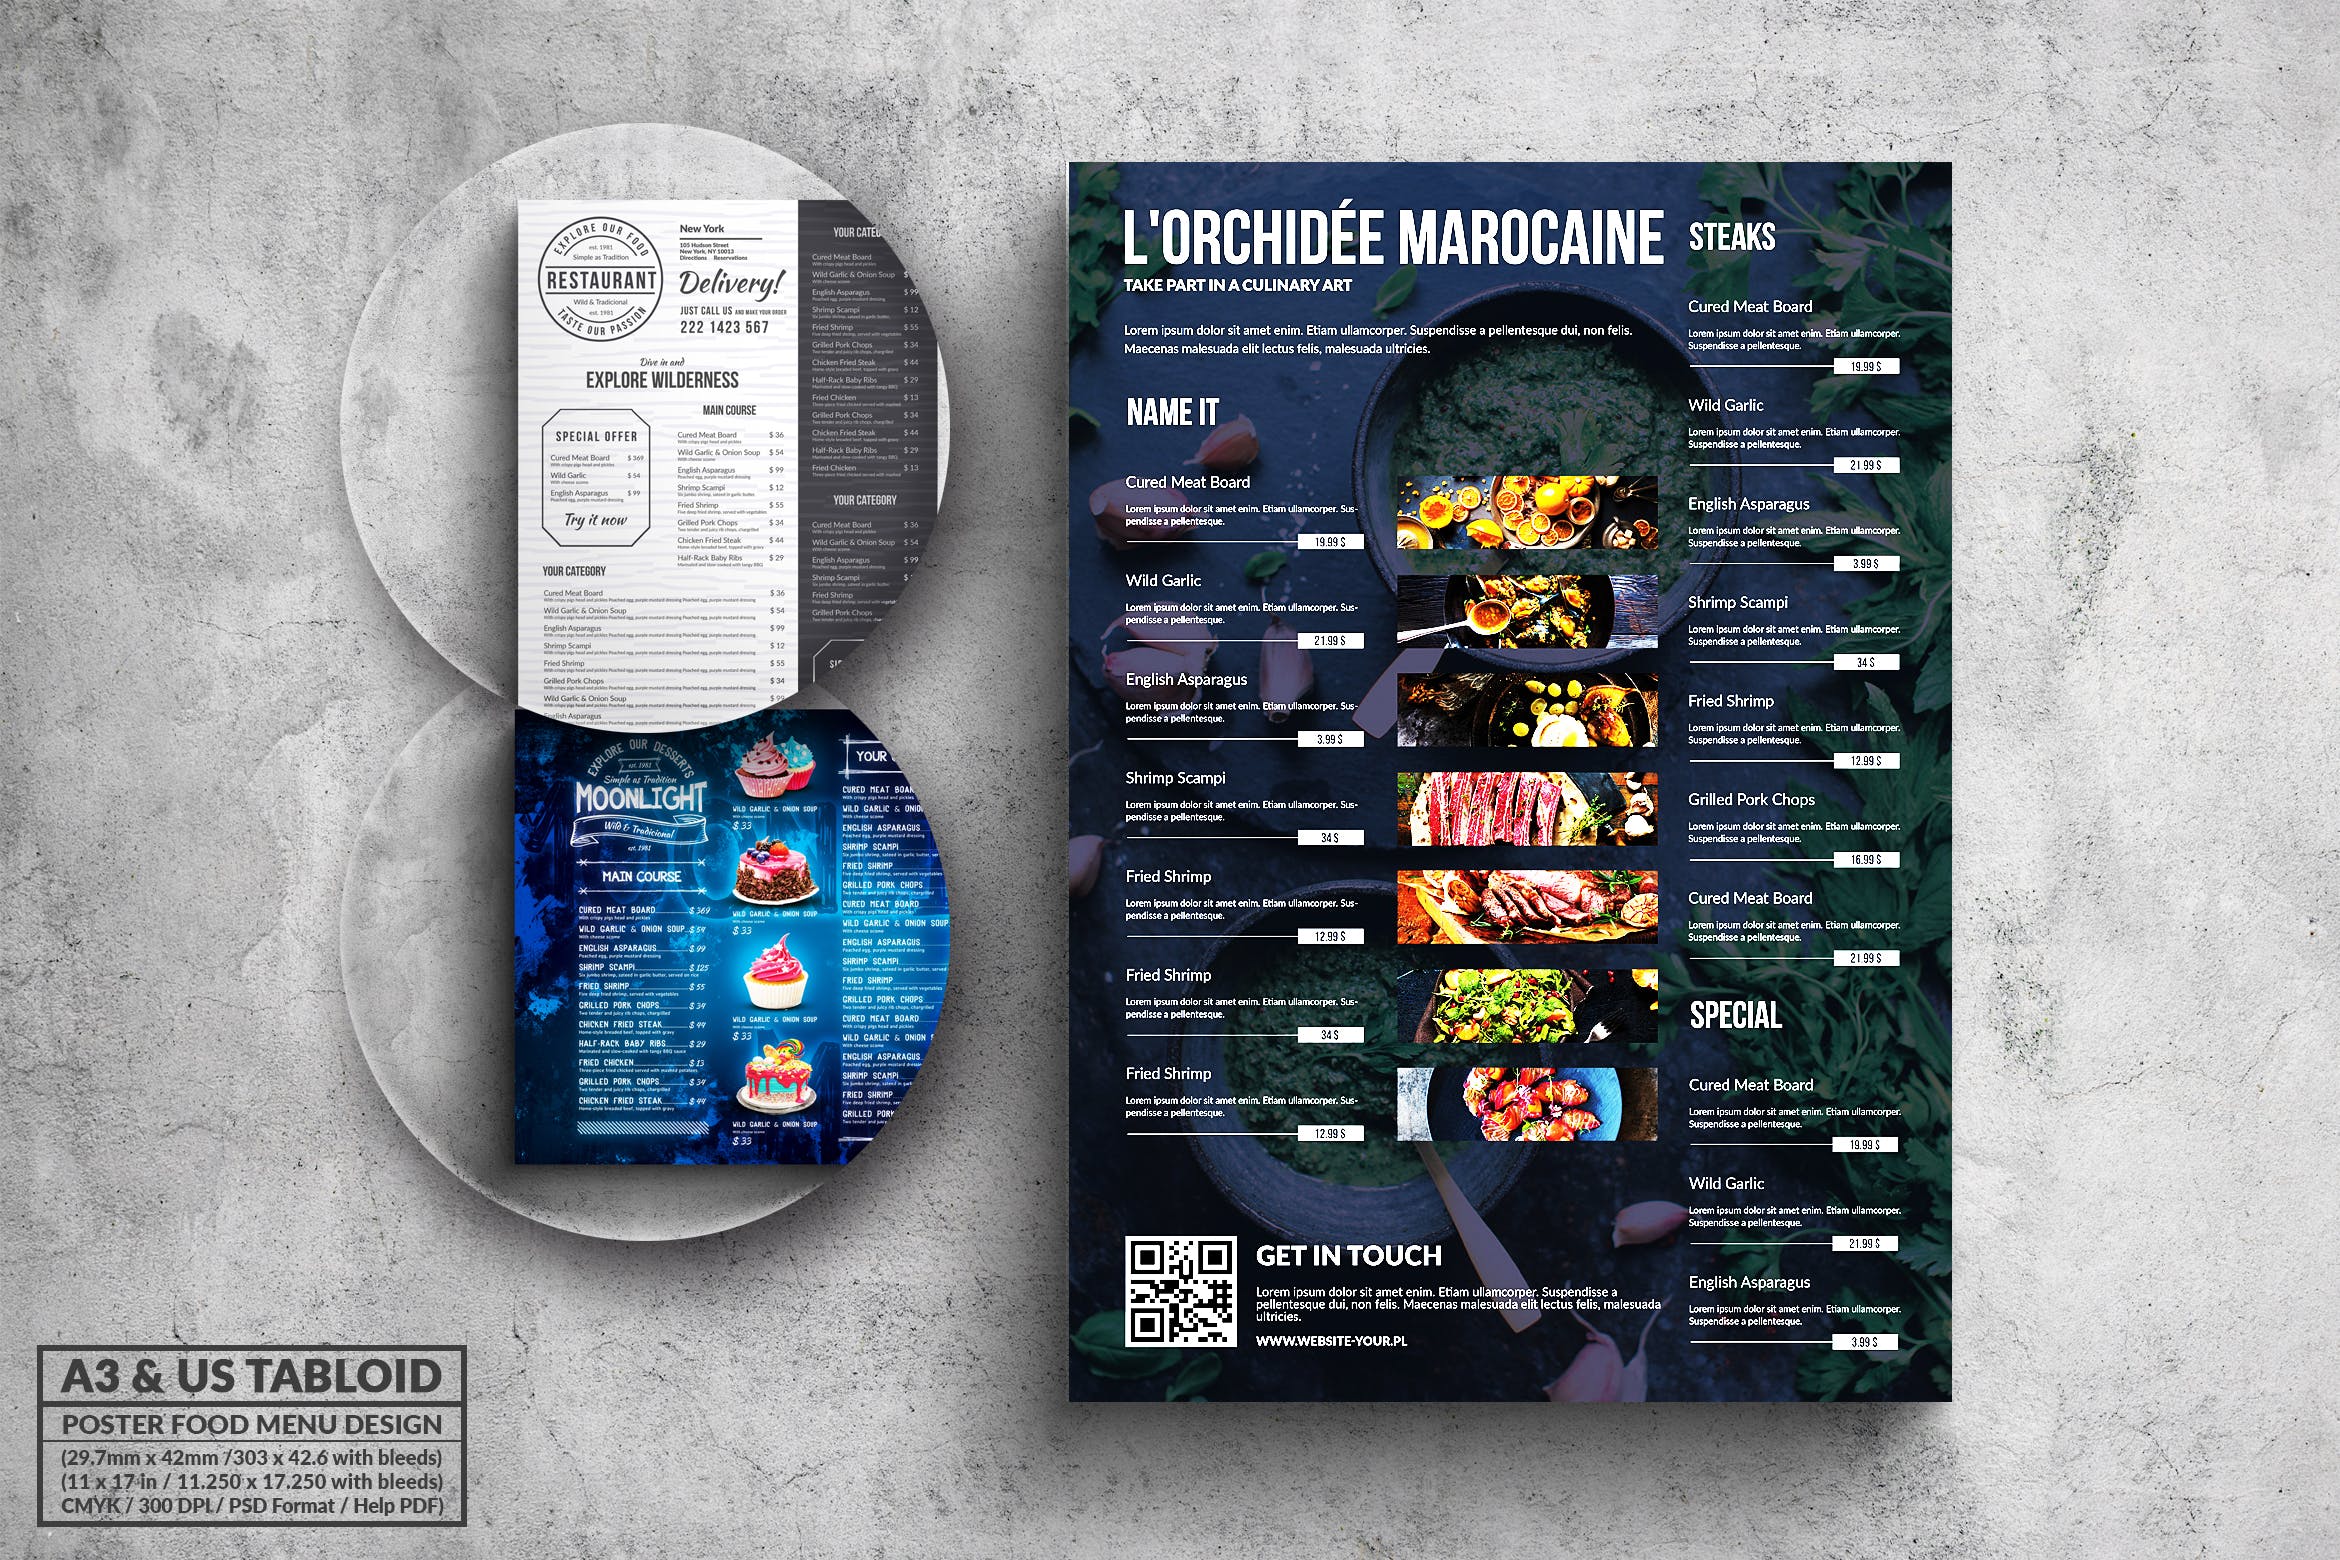 多合一餐馆餐厅菜单海报PSD素材素材库精选模板v1 Poster Food Menu A3 & US Tabloid Bundle插图